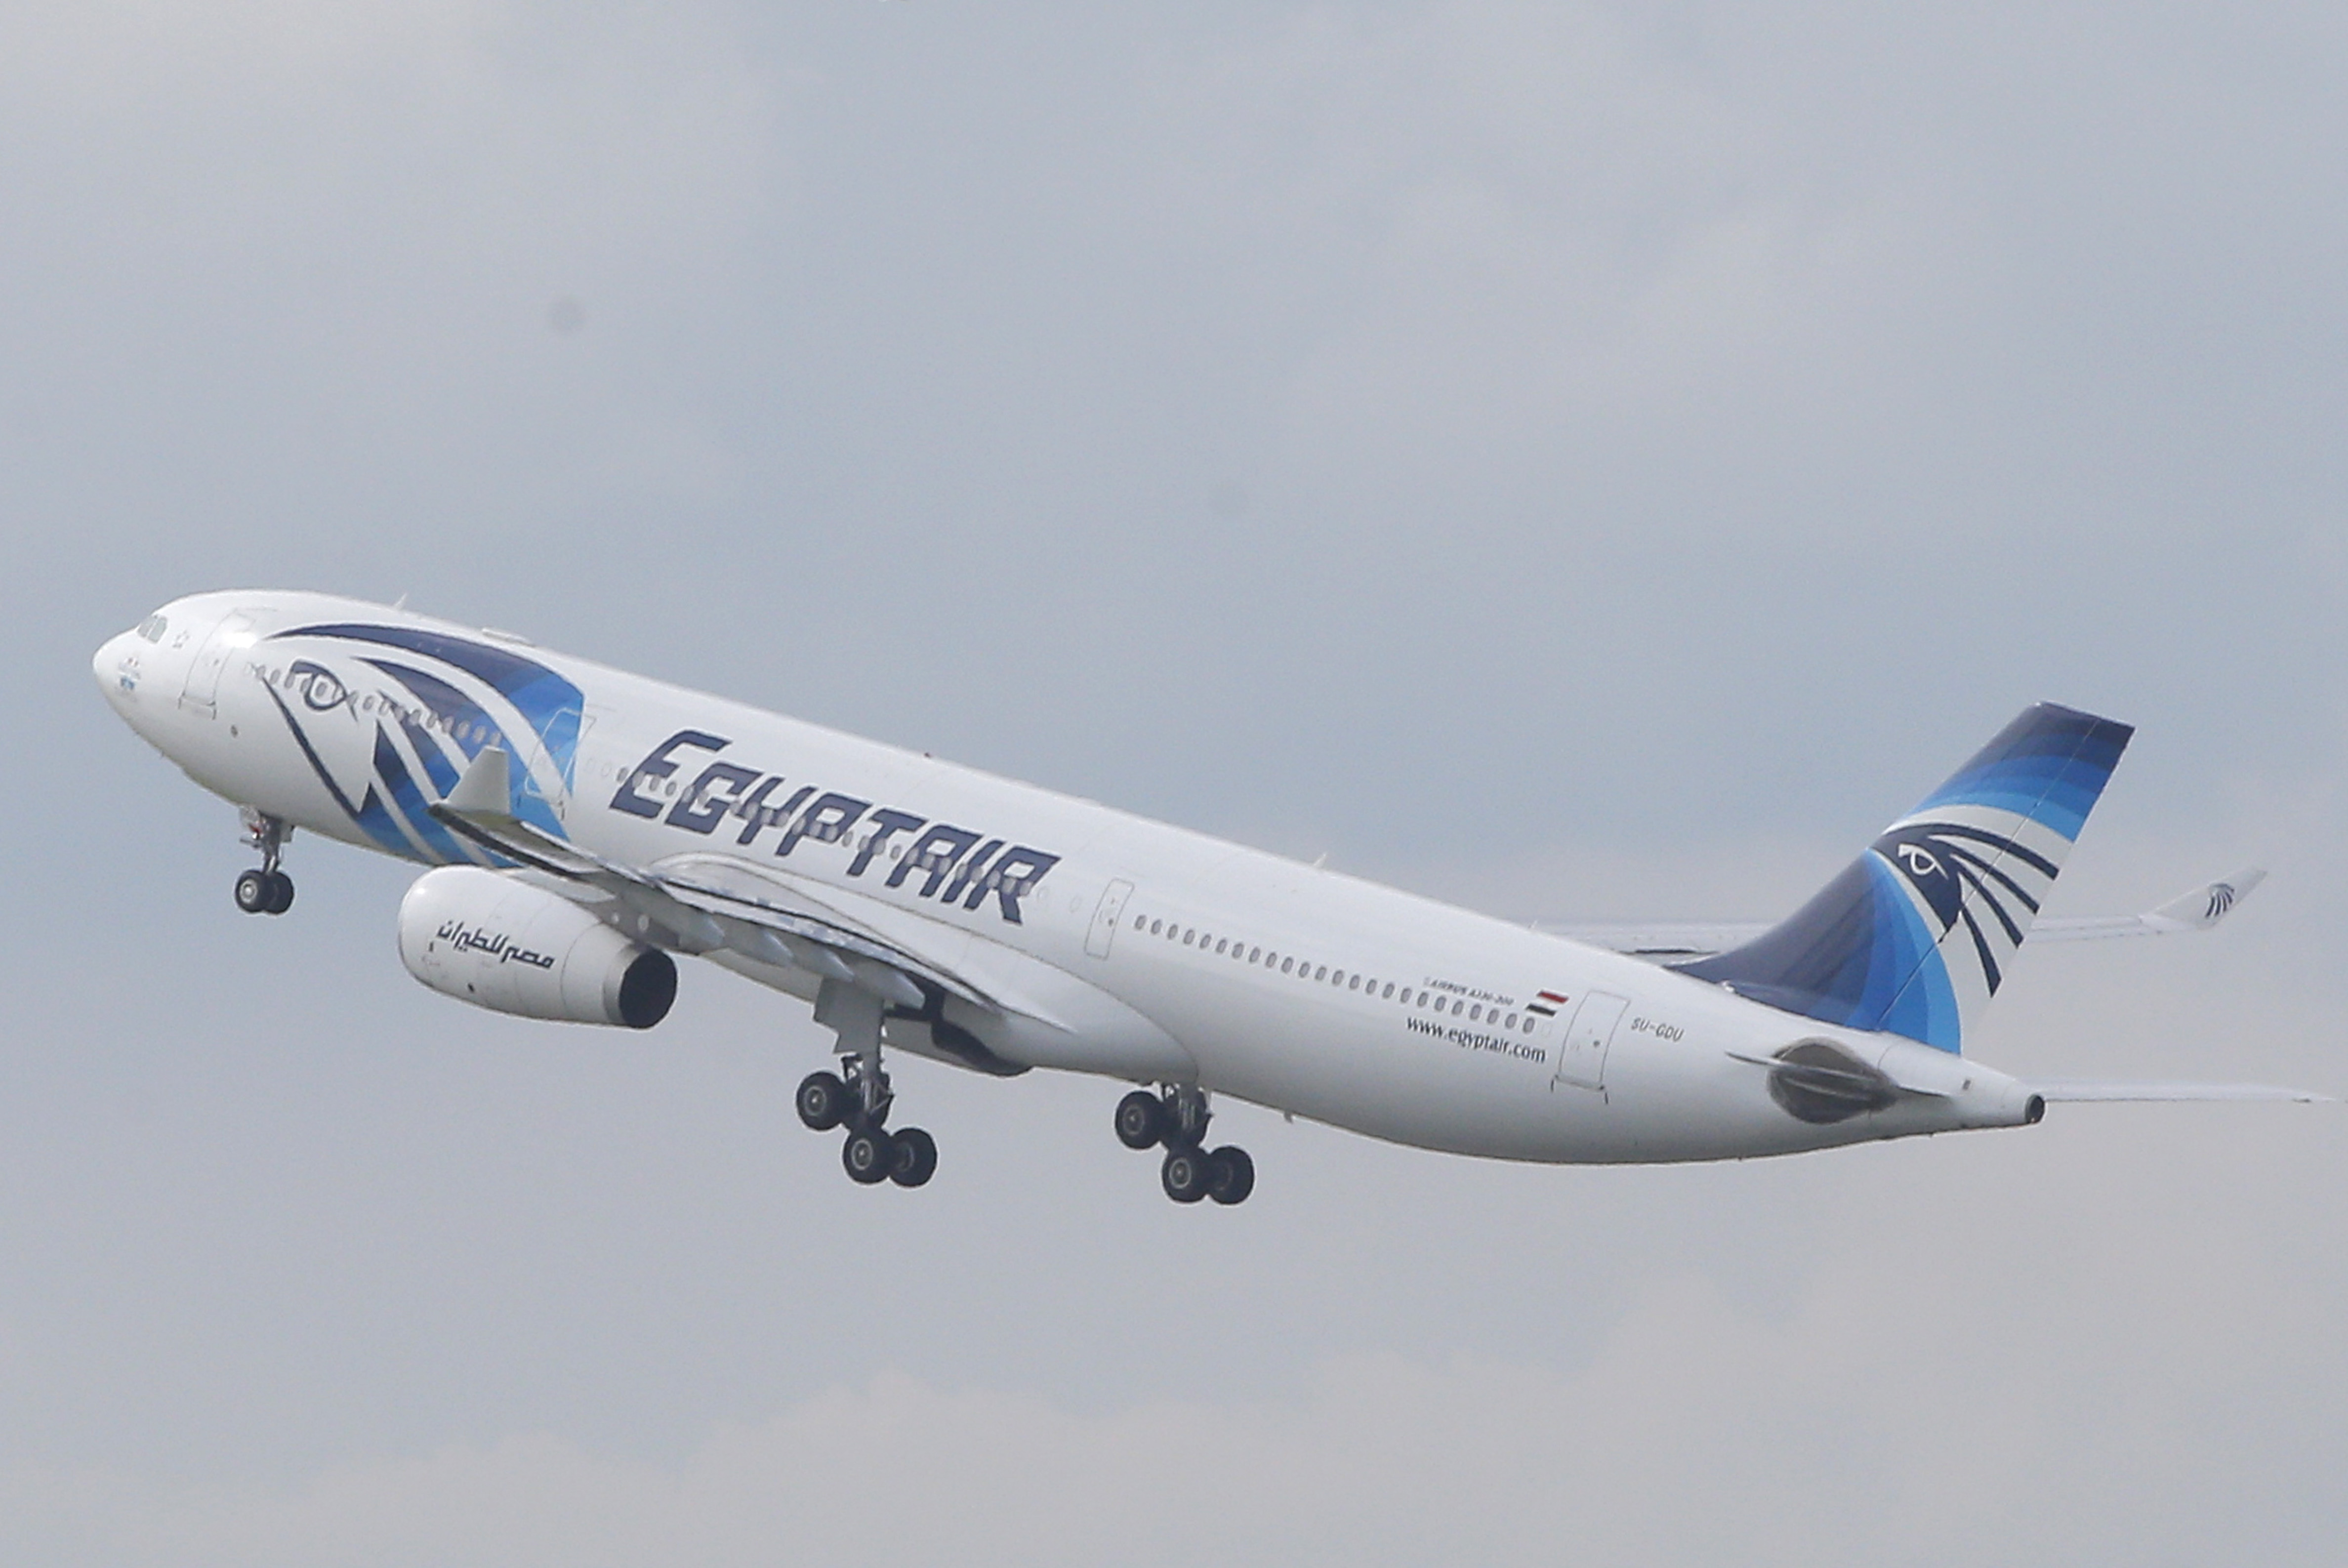 Autoritatile egiptene sustin ca au gasit urme de explozivi pe victimele avionului EgyptAir prabusit in Mediterana